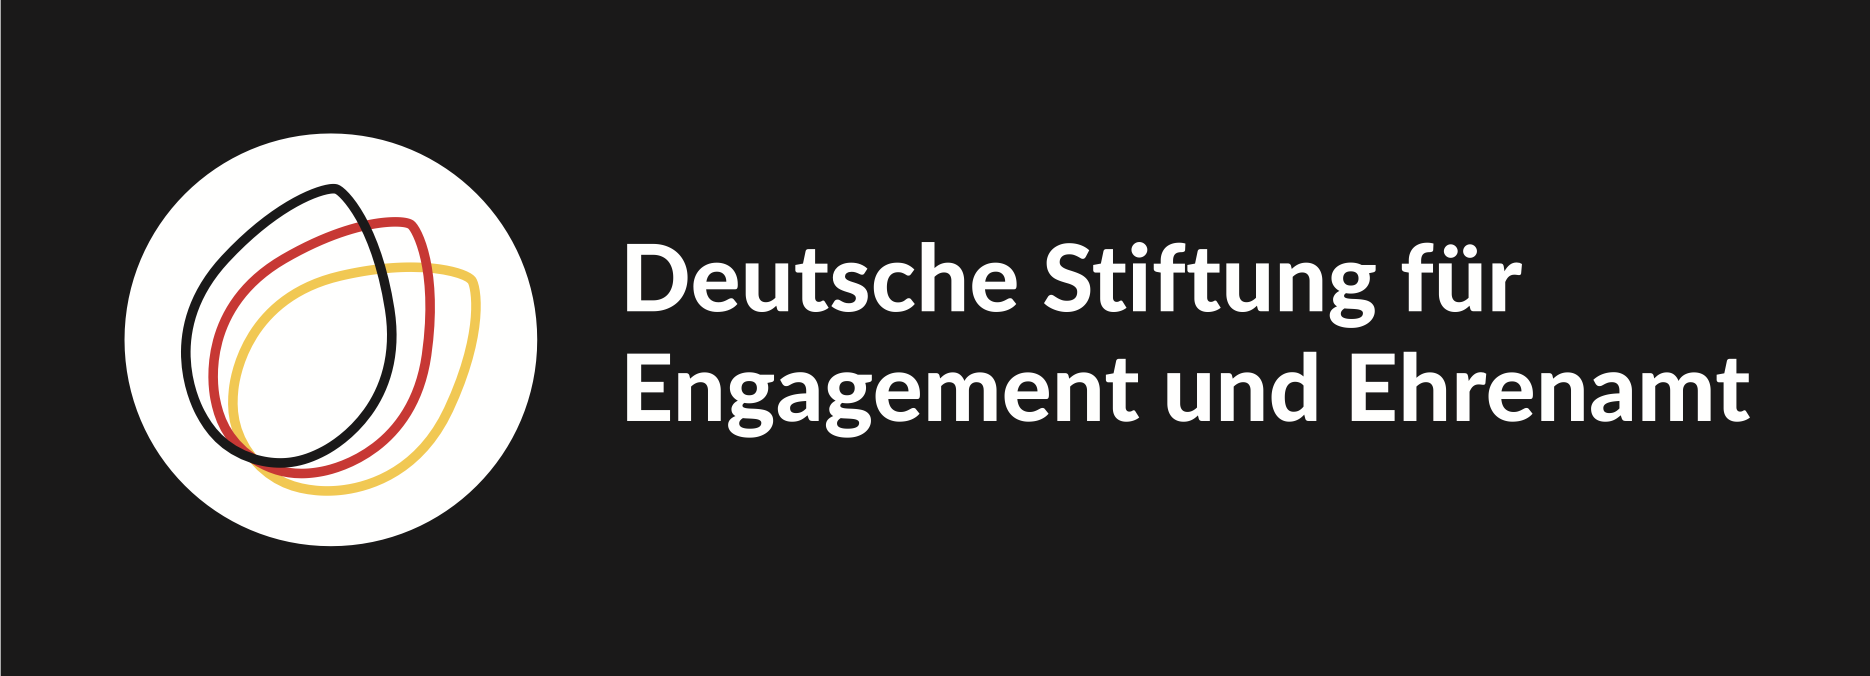 Deutsche Stiftung für Engagement und Ehrenamt | DSEE Logo